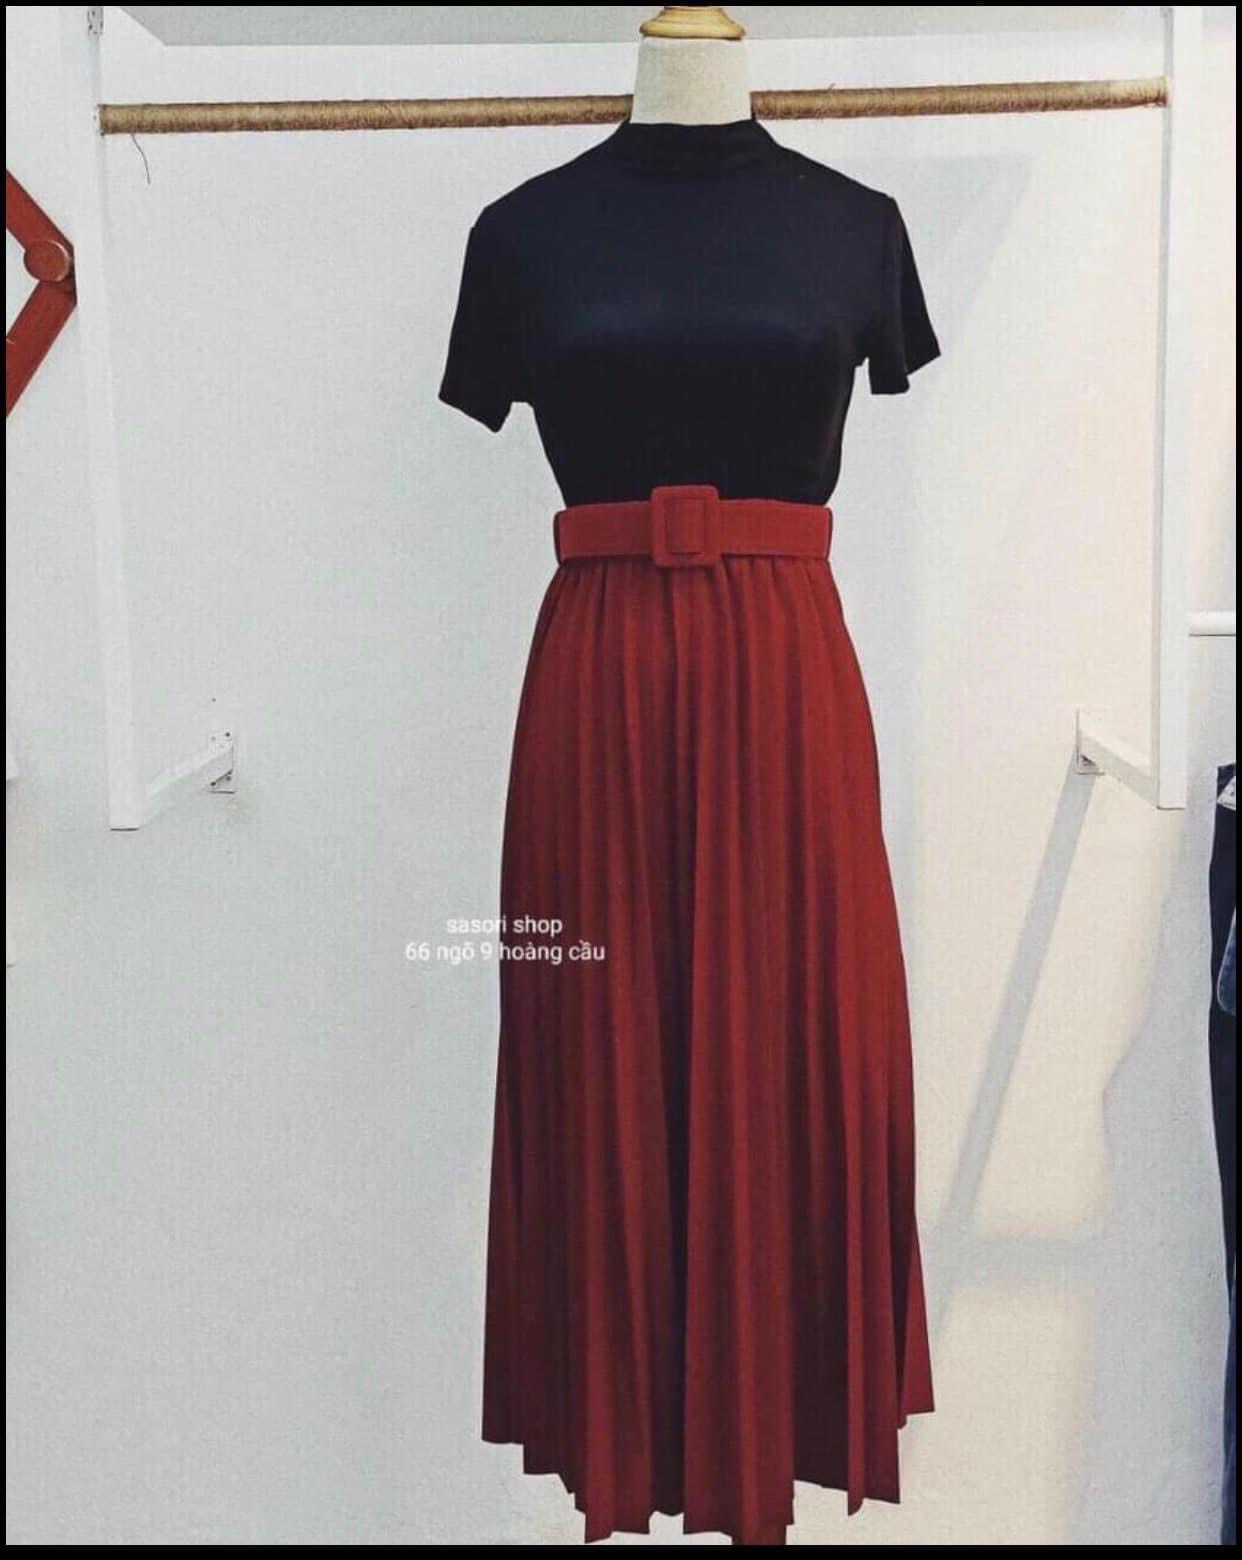 Lý do vì sao đặt hàng váy đầm hàng Quảng Châu được chủ shop lựa chọn